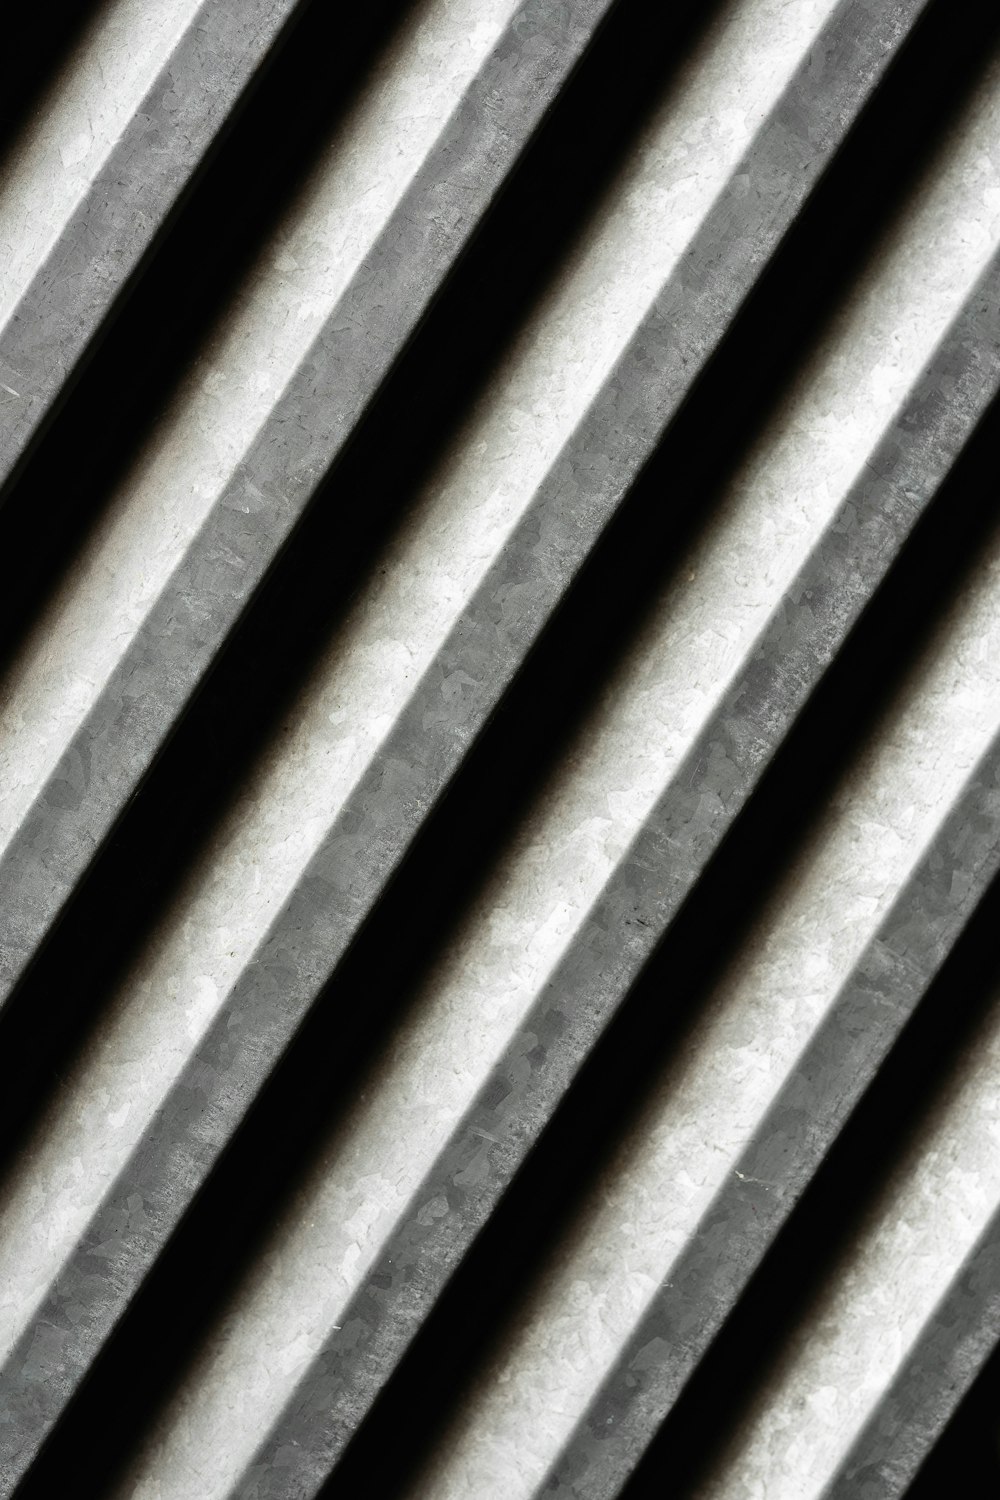 Una foto in bianco e nero di barre di metallo